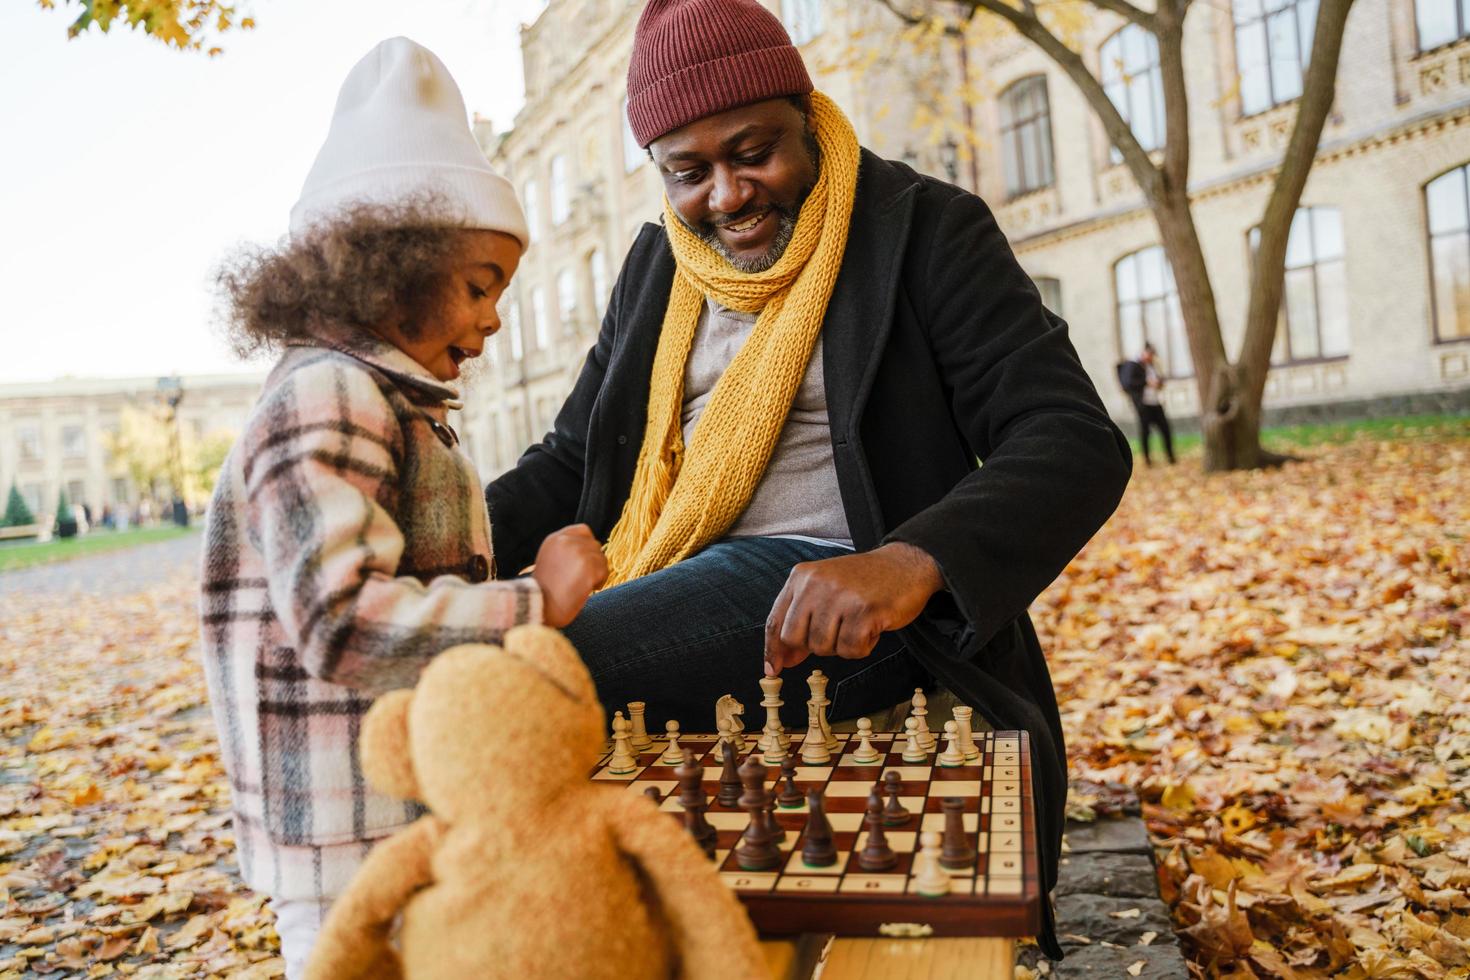 zwarte grootvader en kleindochter schaken in herfstpark foto